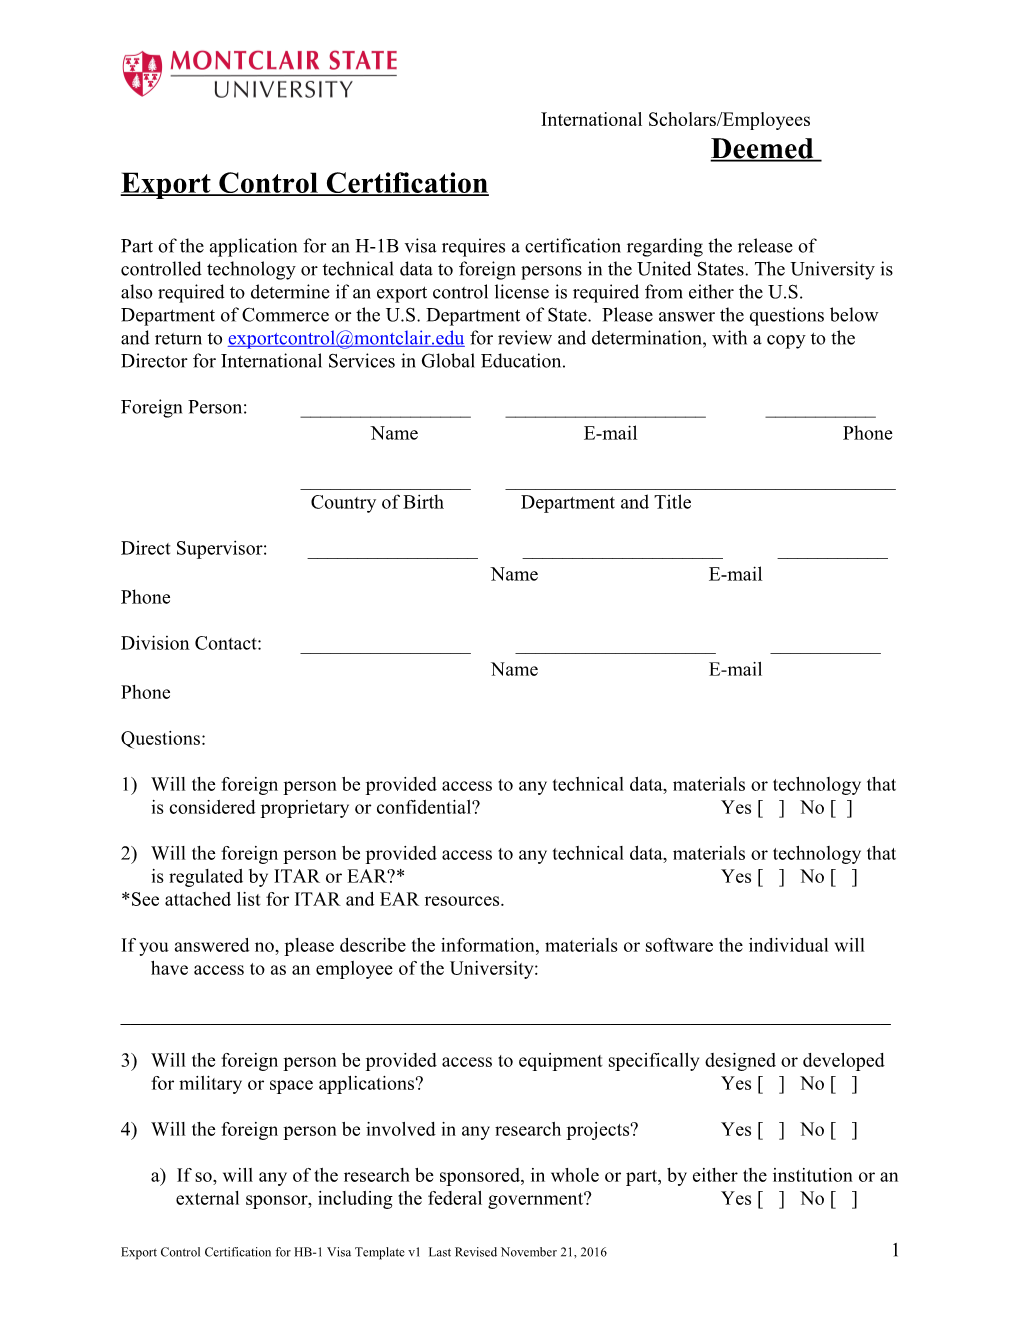 Deemed Export Control Certification